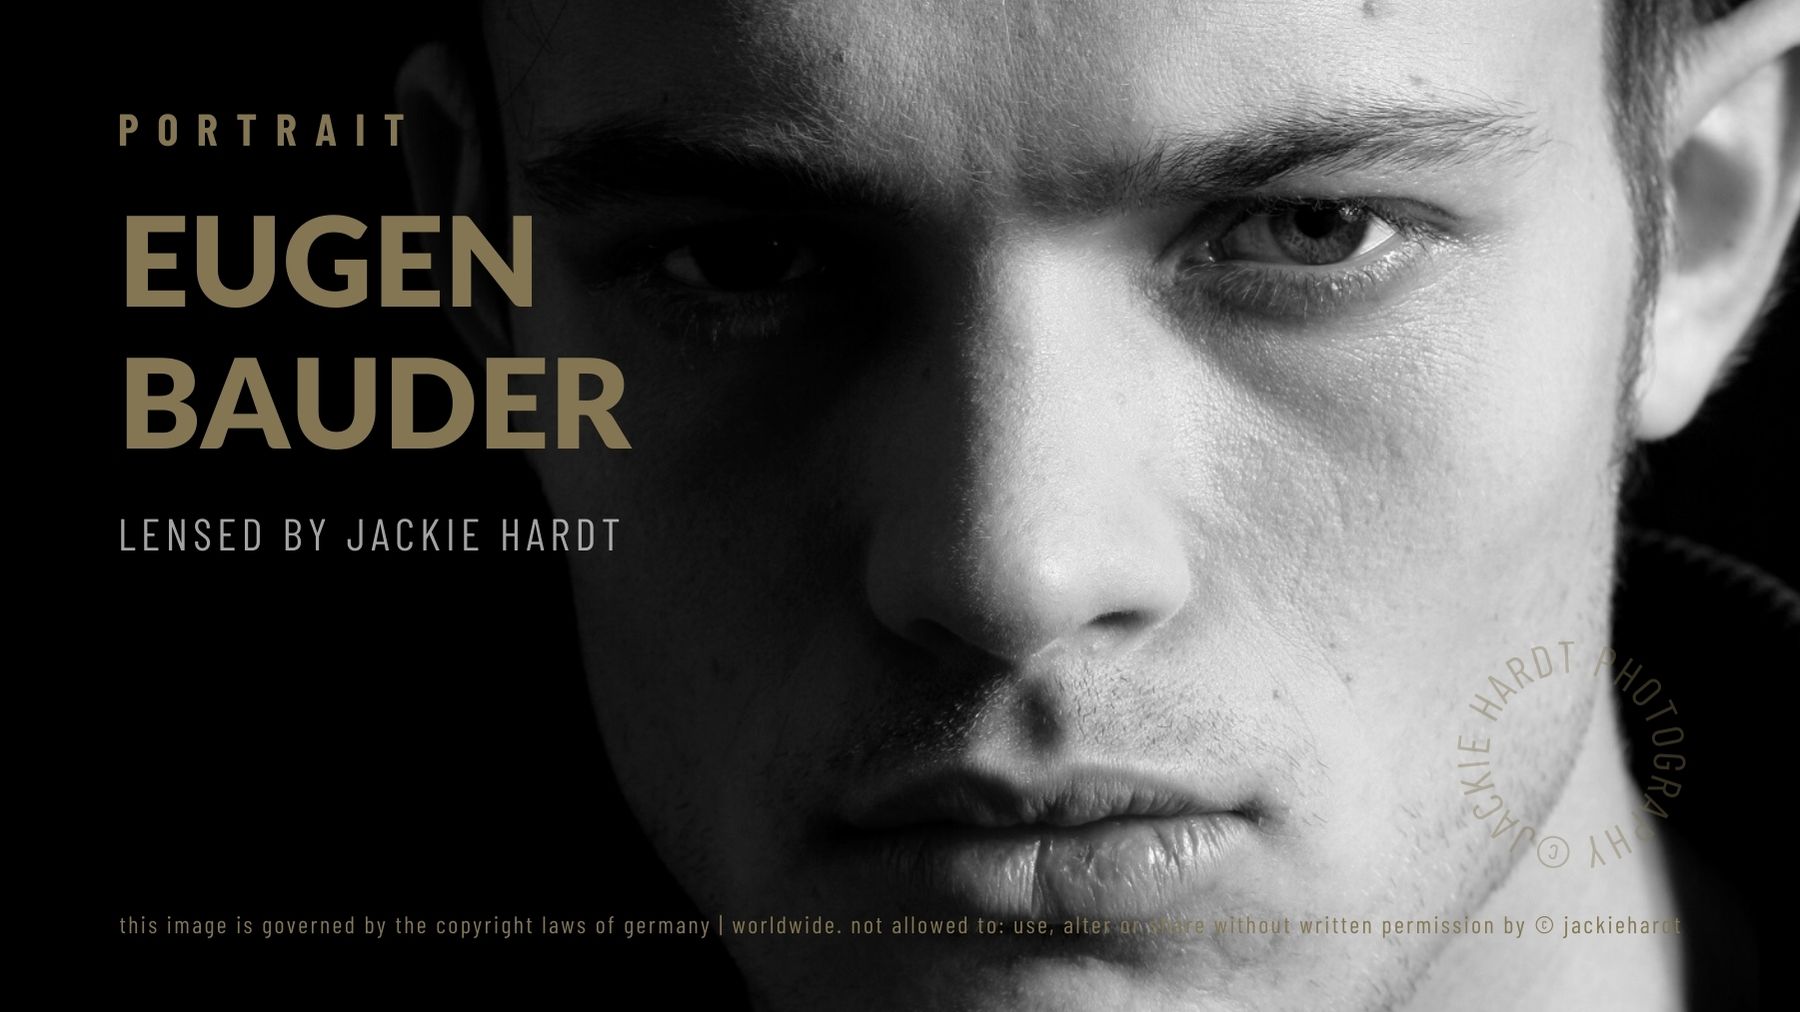 Eugen Bauder, Model & Actor, Captured by Jackie Hardt